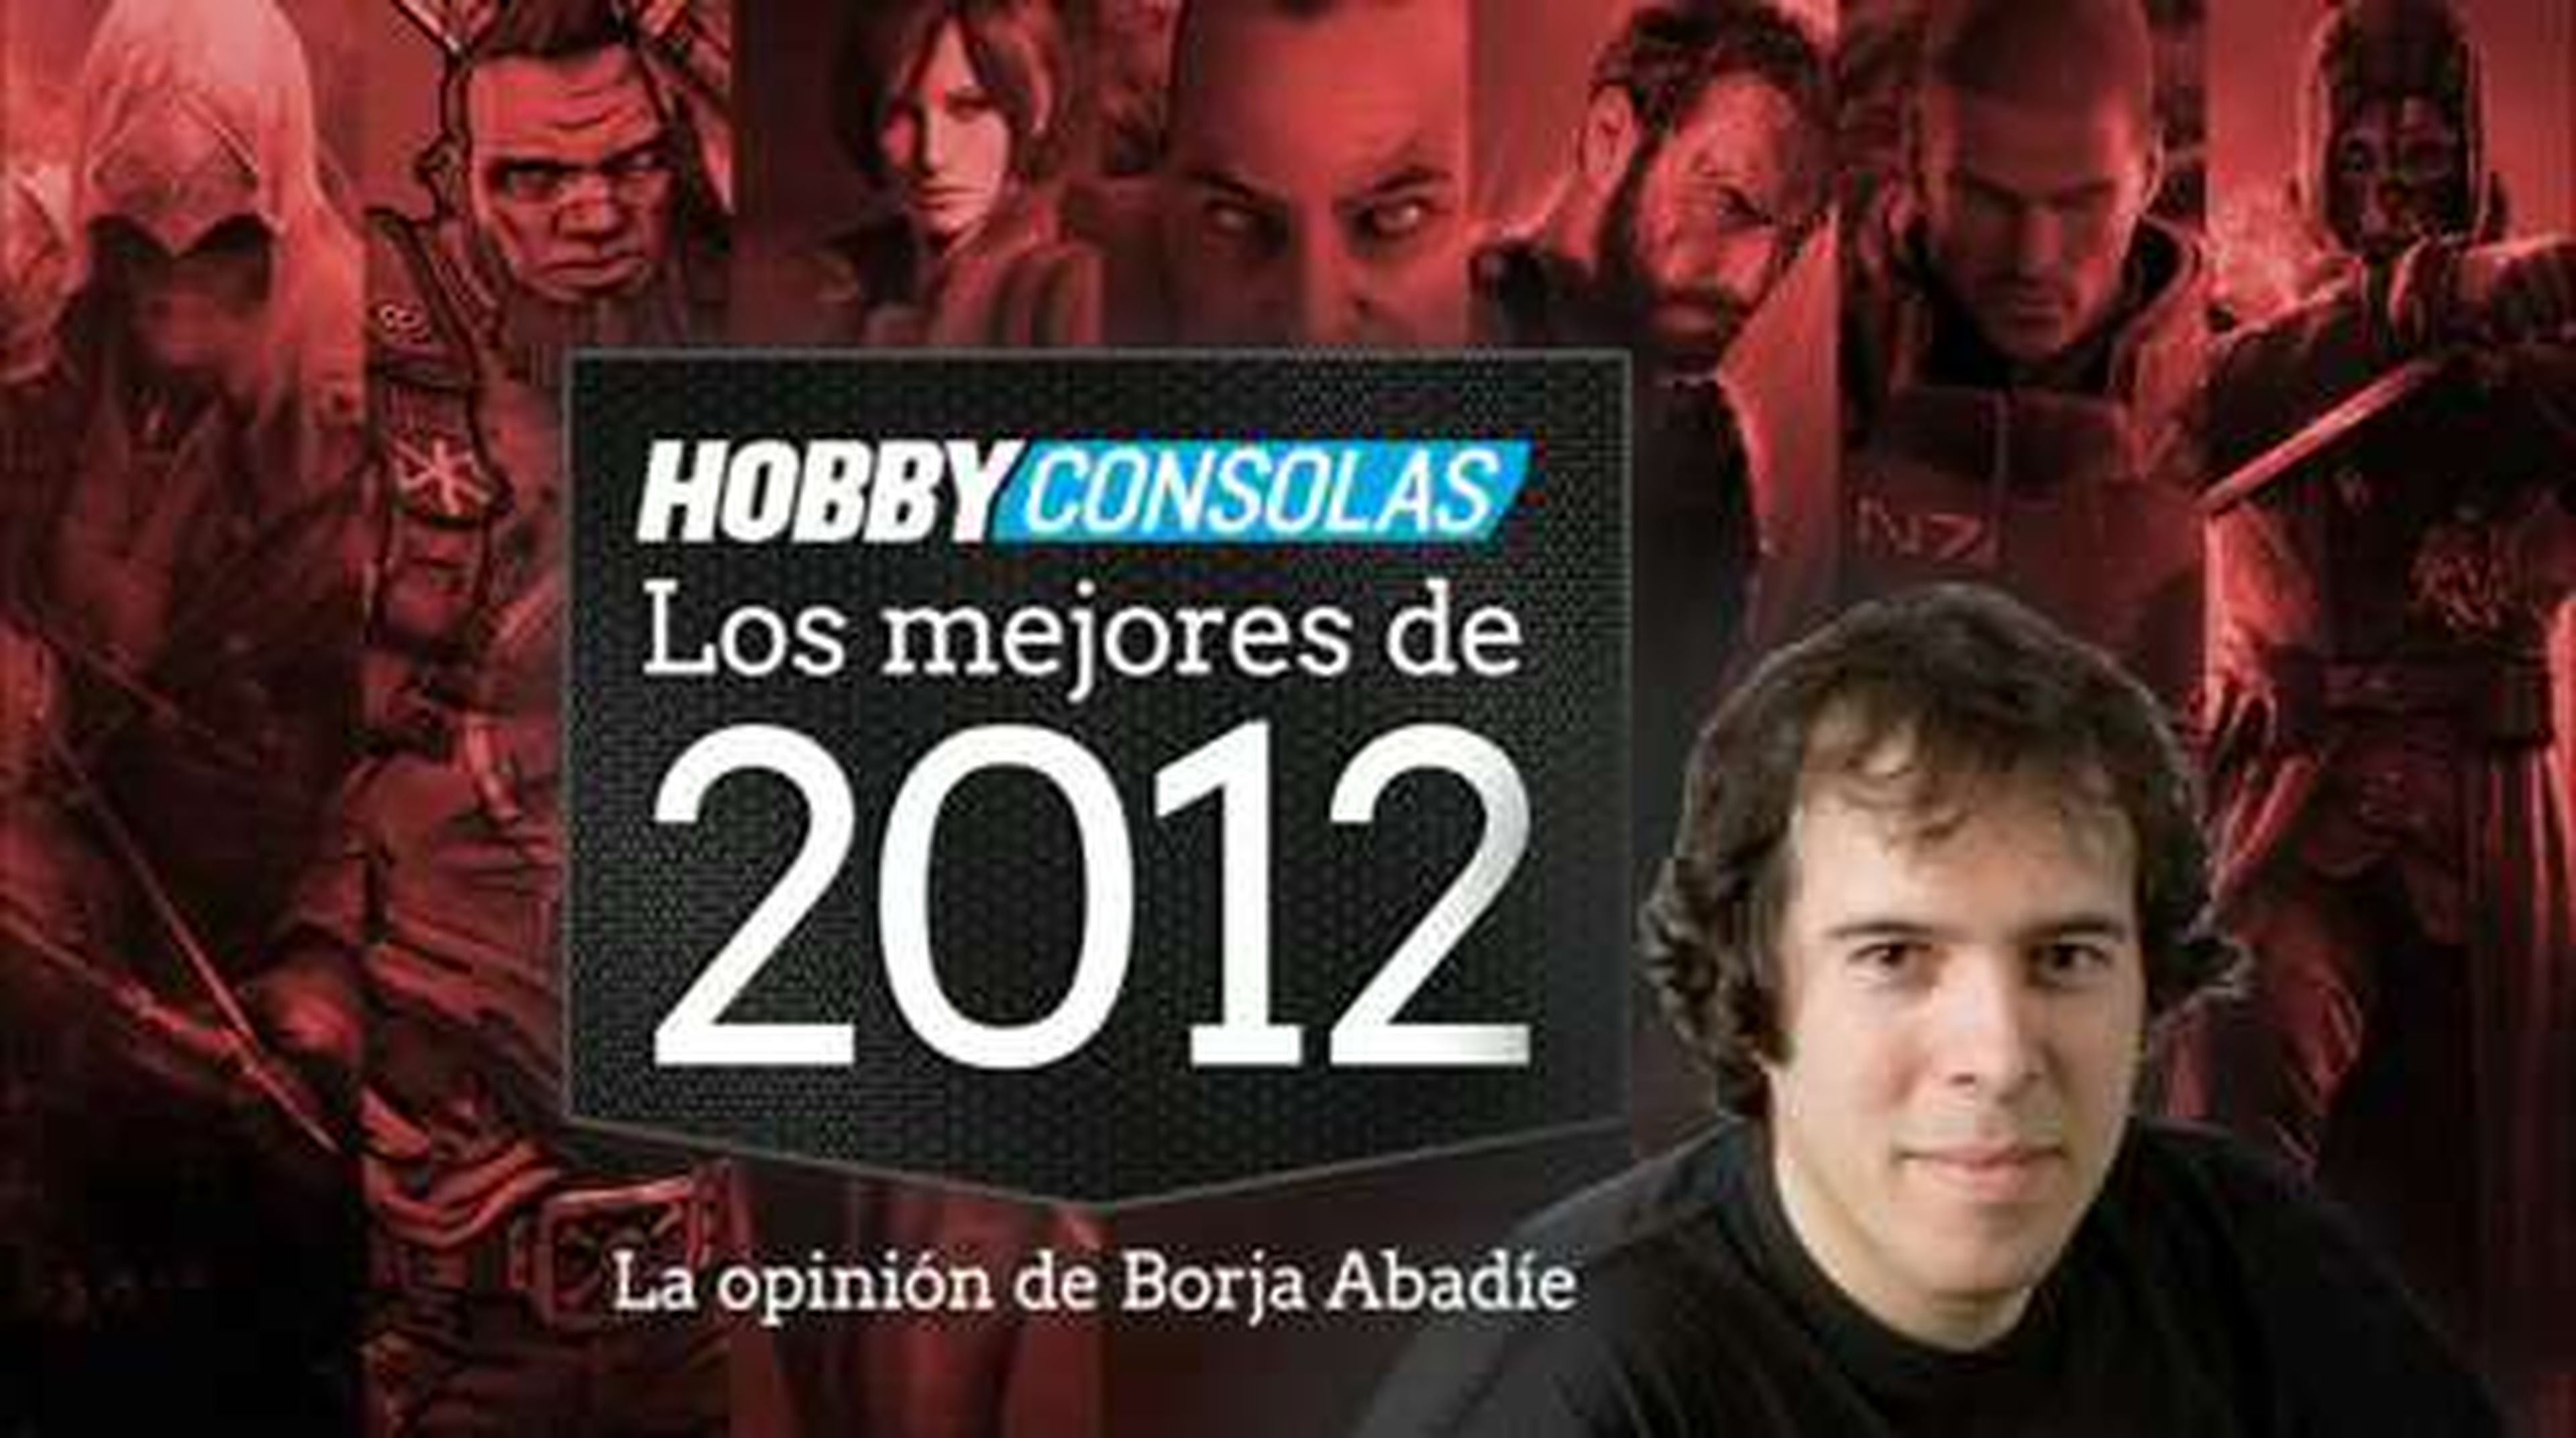 Lo mejor de 2012 (HD) Borja Abadie en HobbyConsolas.com